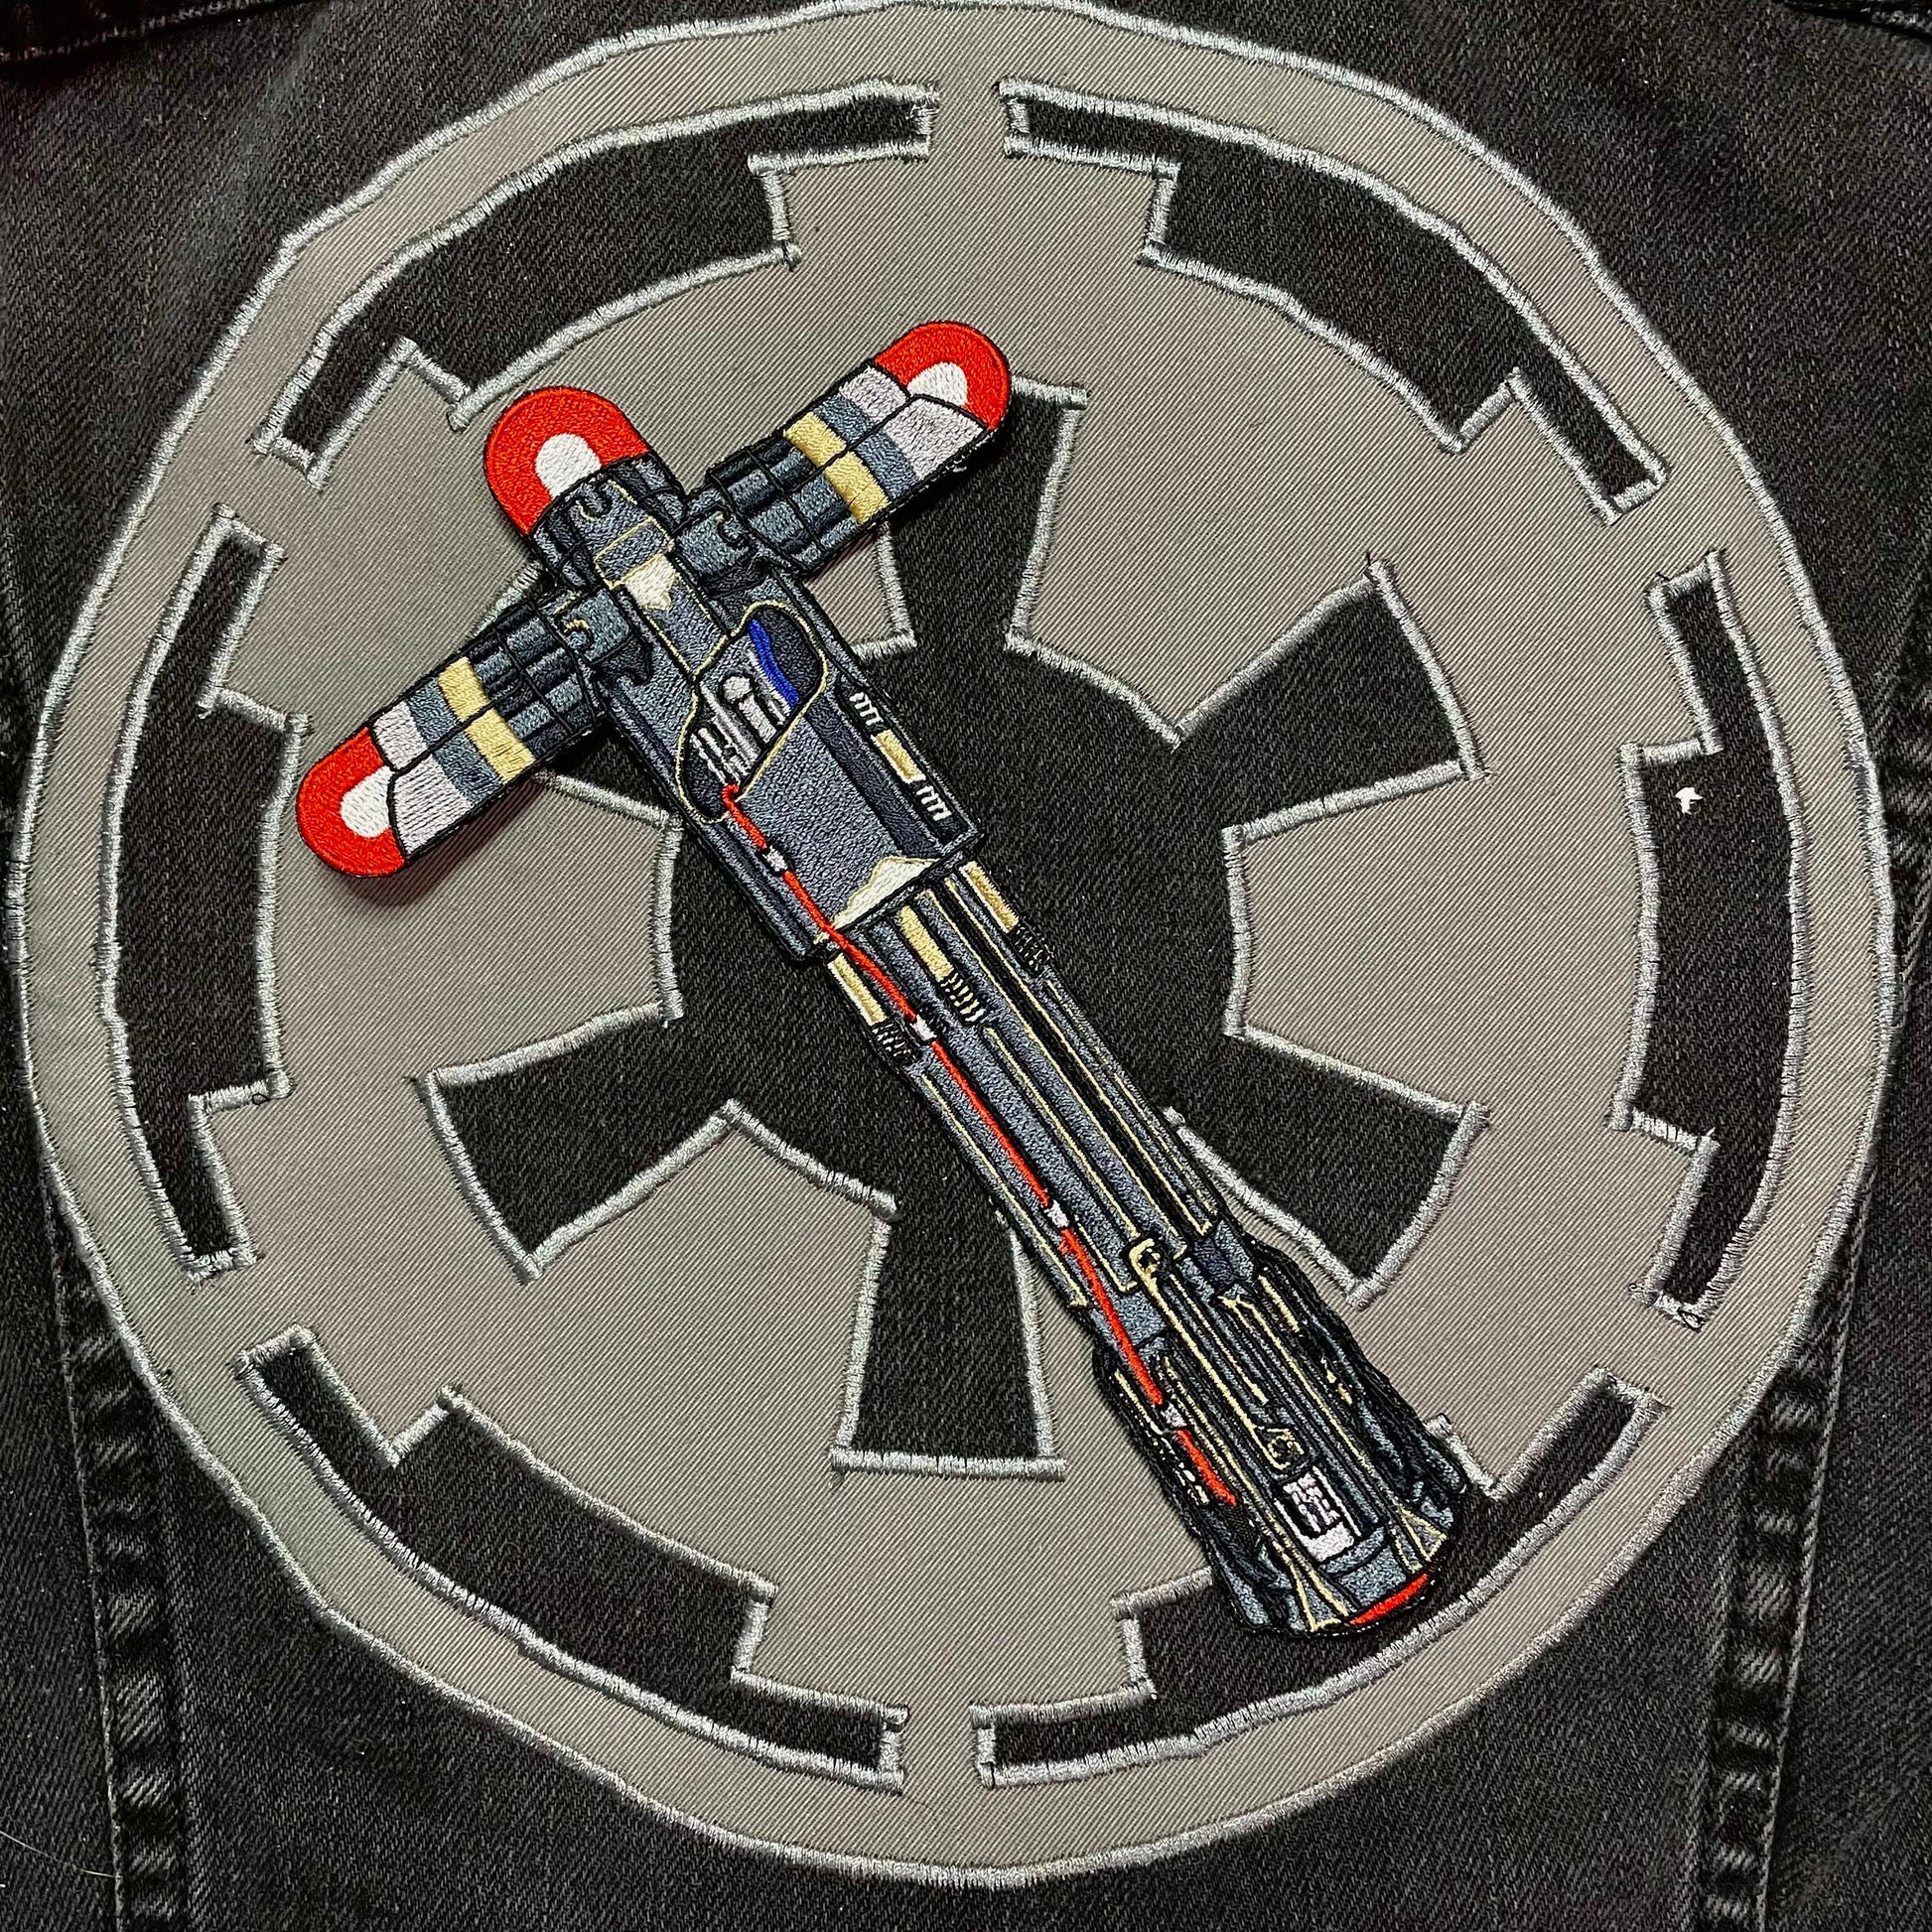 Star Wars Galaxy Round Patch, Rebel Alliance Logo, Embroidered